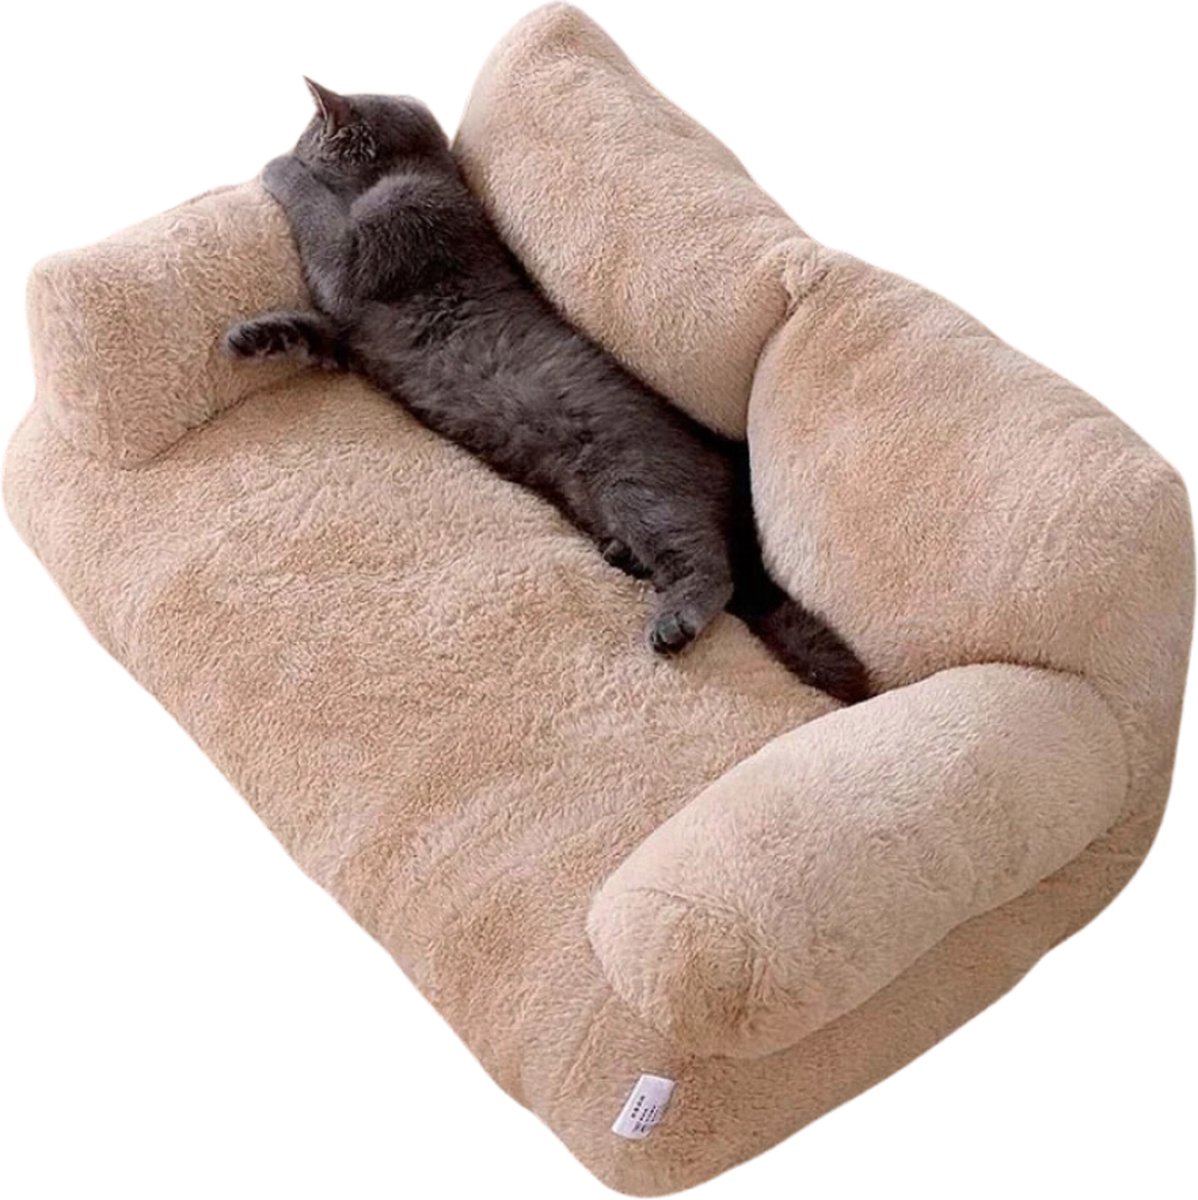 VoordeelVerkenner - Luxe Kattenbed - Warm Huisdier Bed Voor Kleine Middelgrote Honden Katten - Comfortabele Kattenmand - Kaki - 55x38x18cm